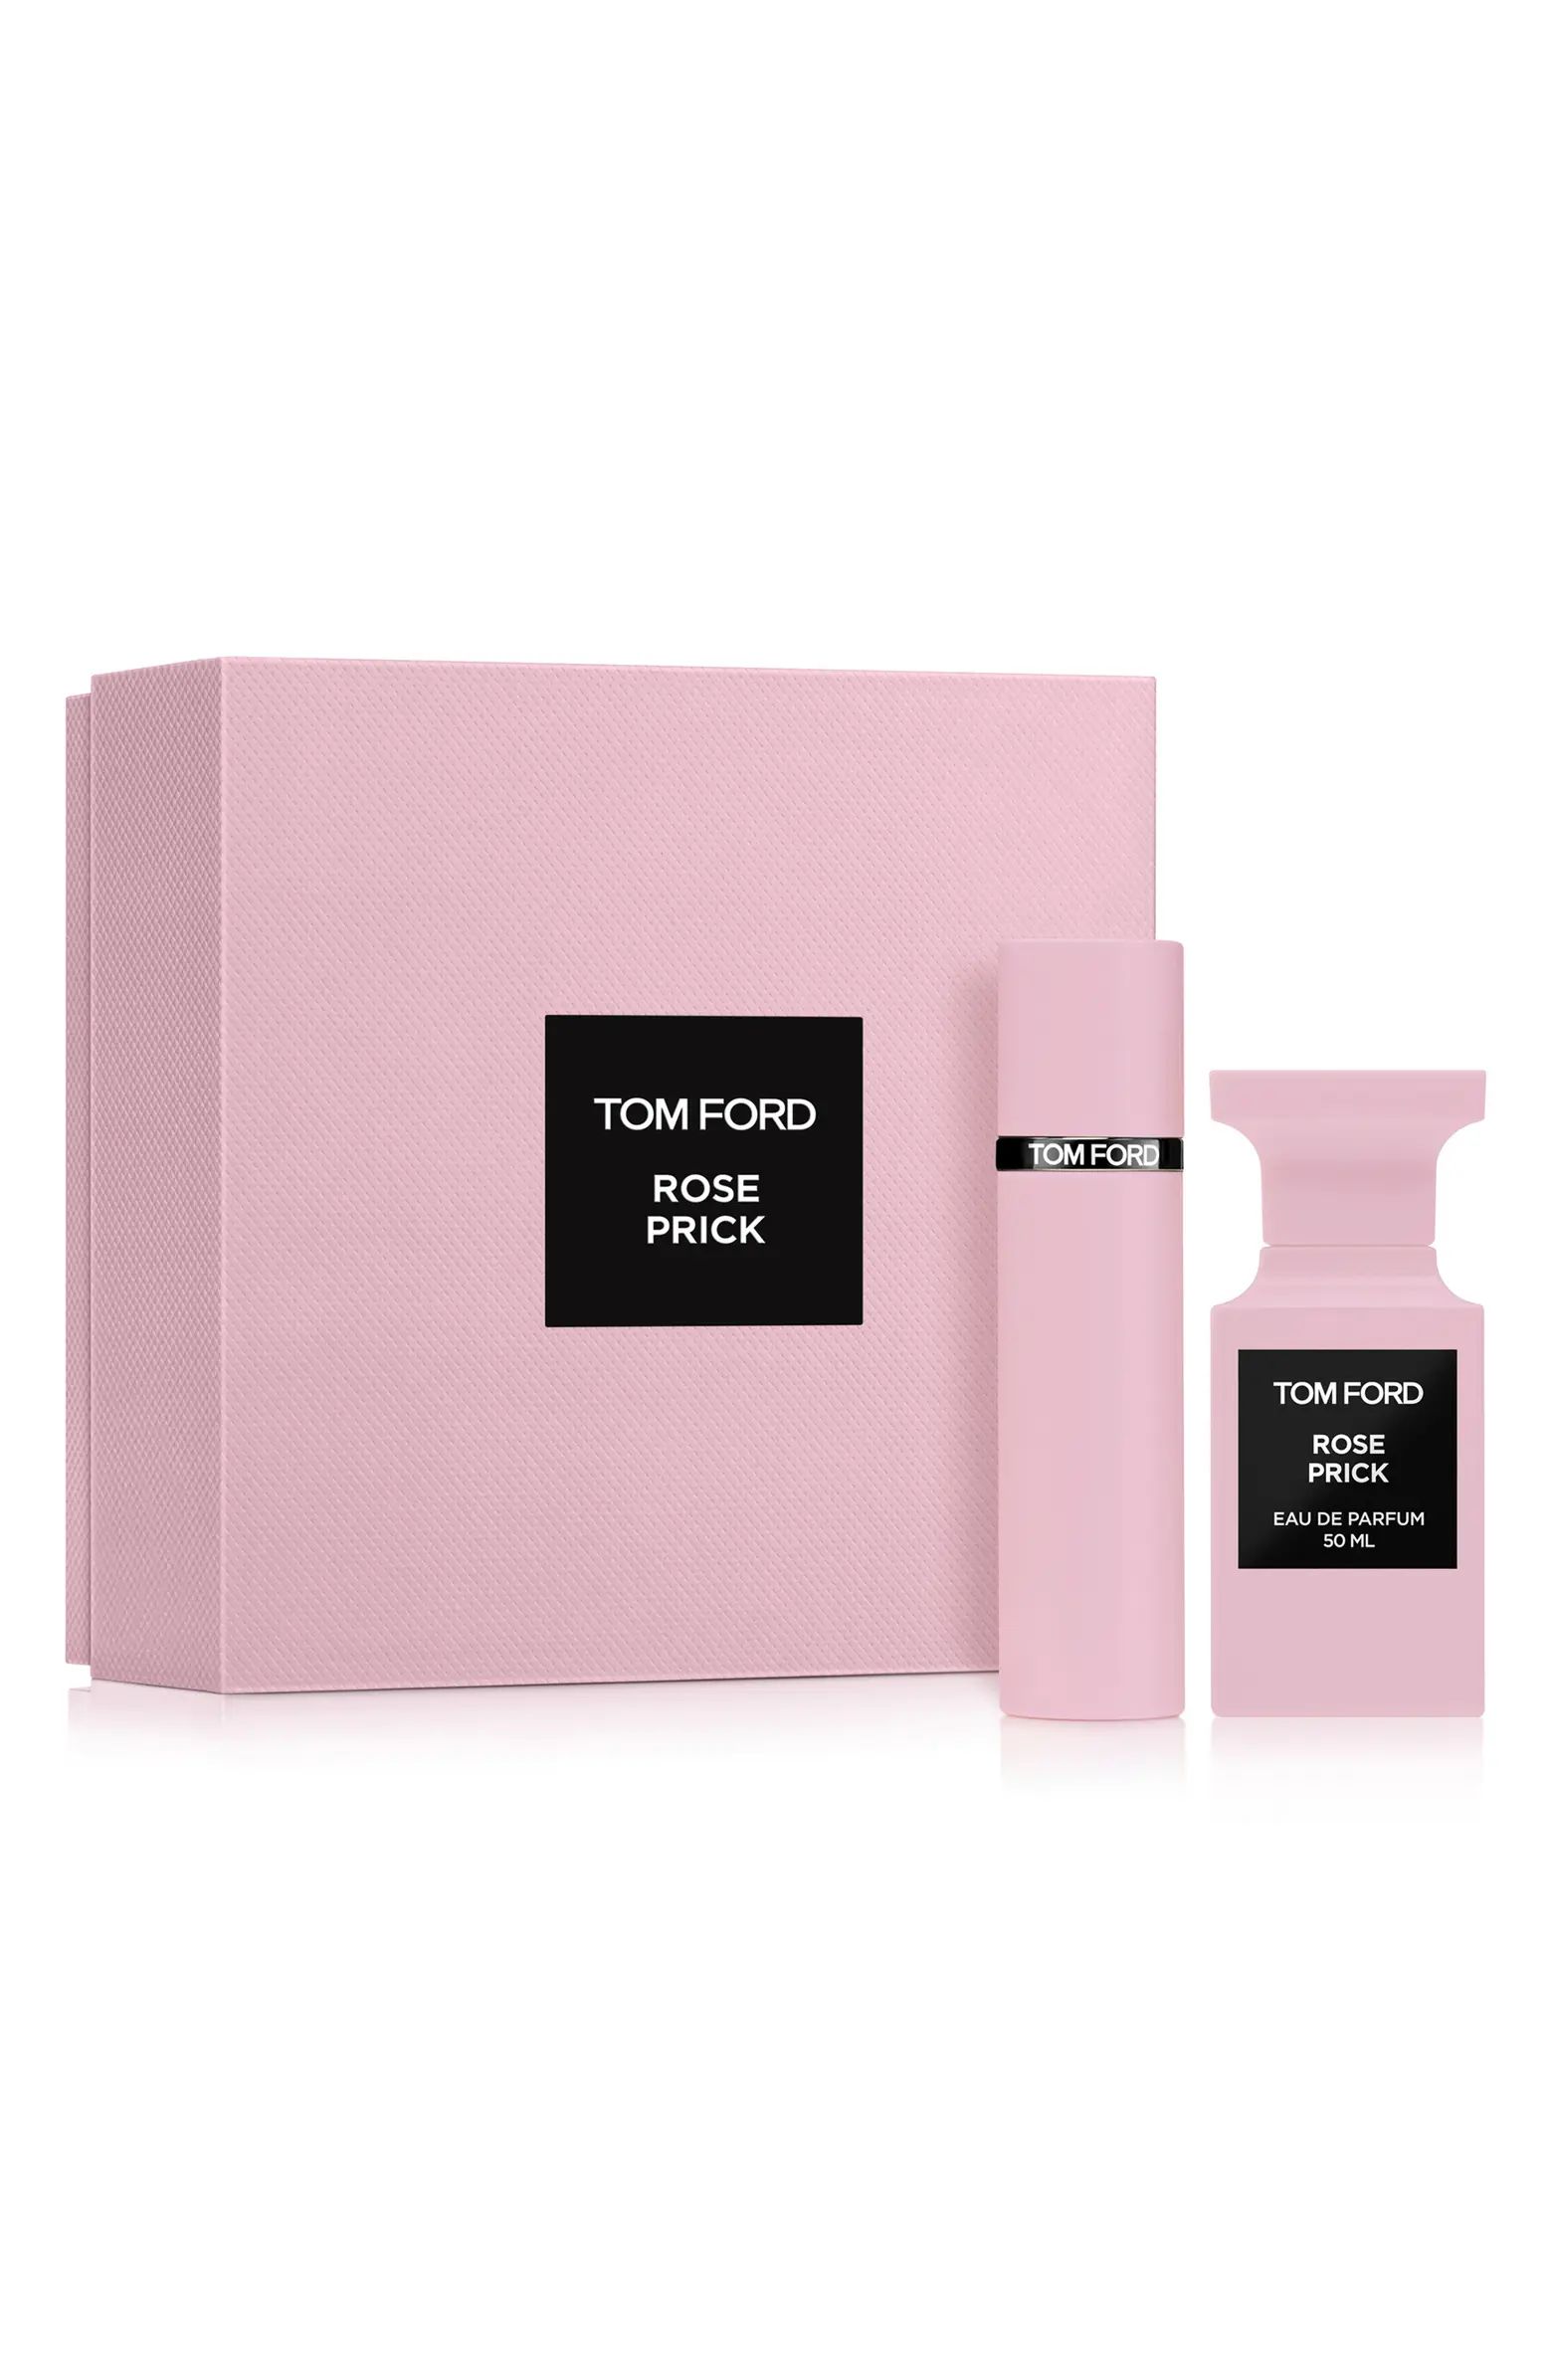 Rose Prick Eau de Parfum 2-Piece Gift Set $475 Value | Nordstrom